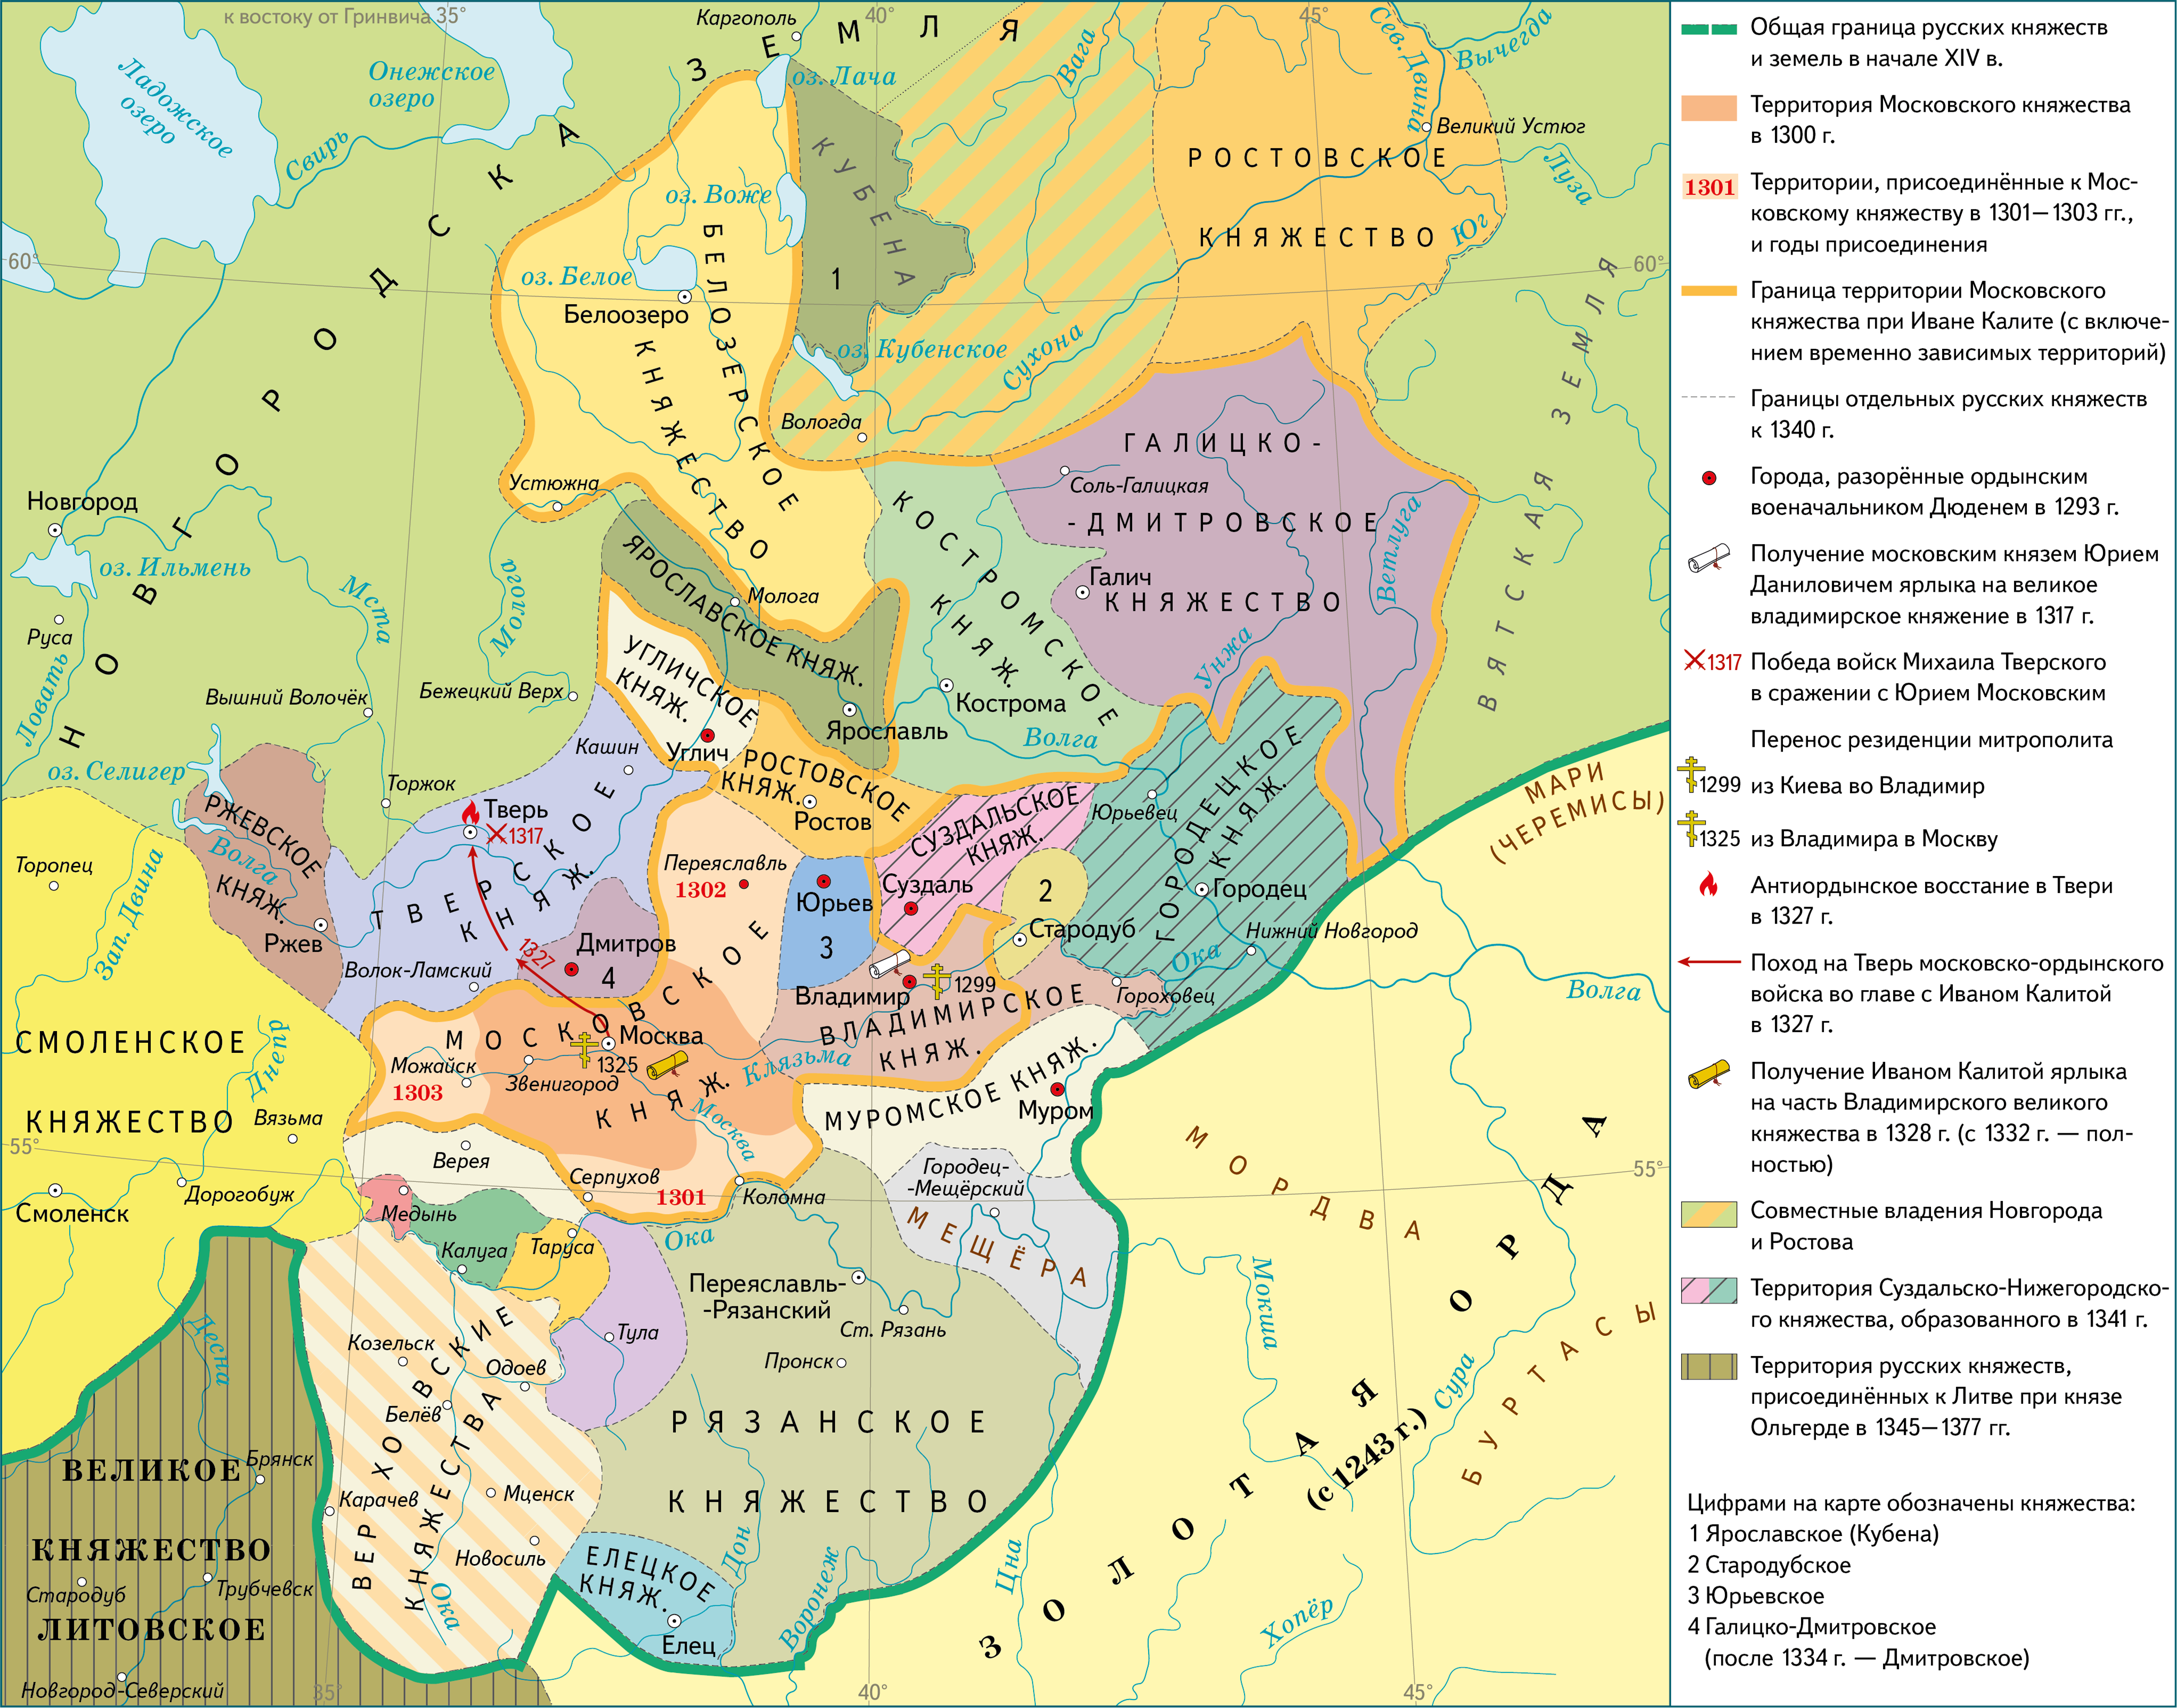 Воины великого литовского и русского княжеств с золотой ордой в xiv веке